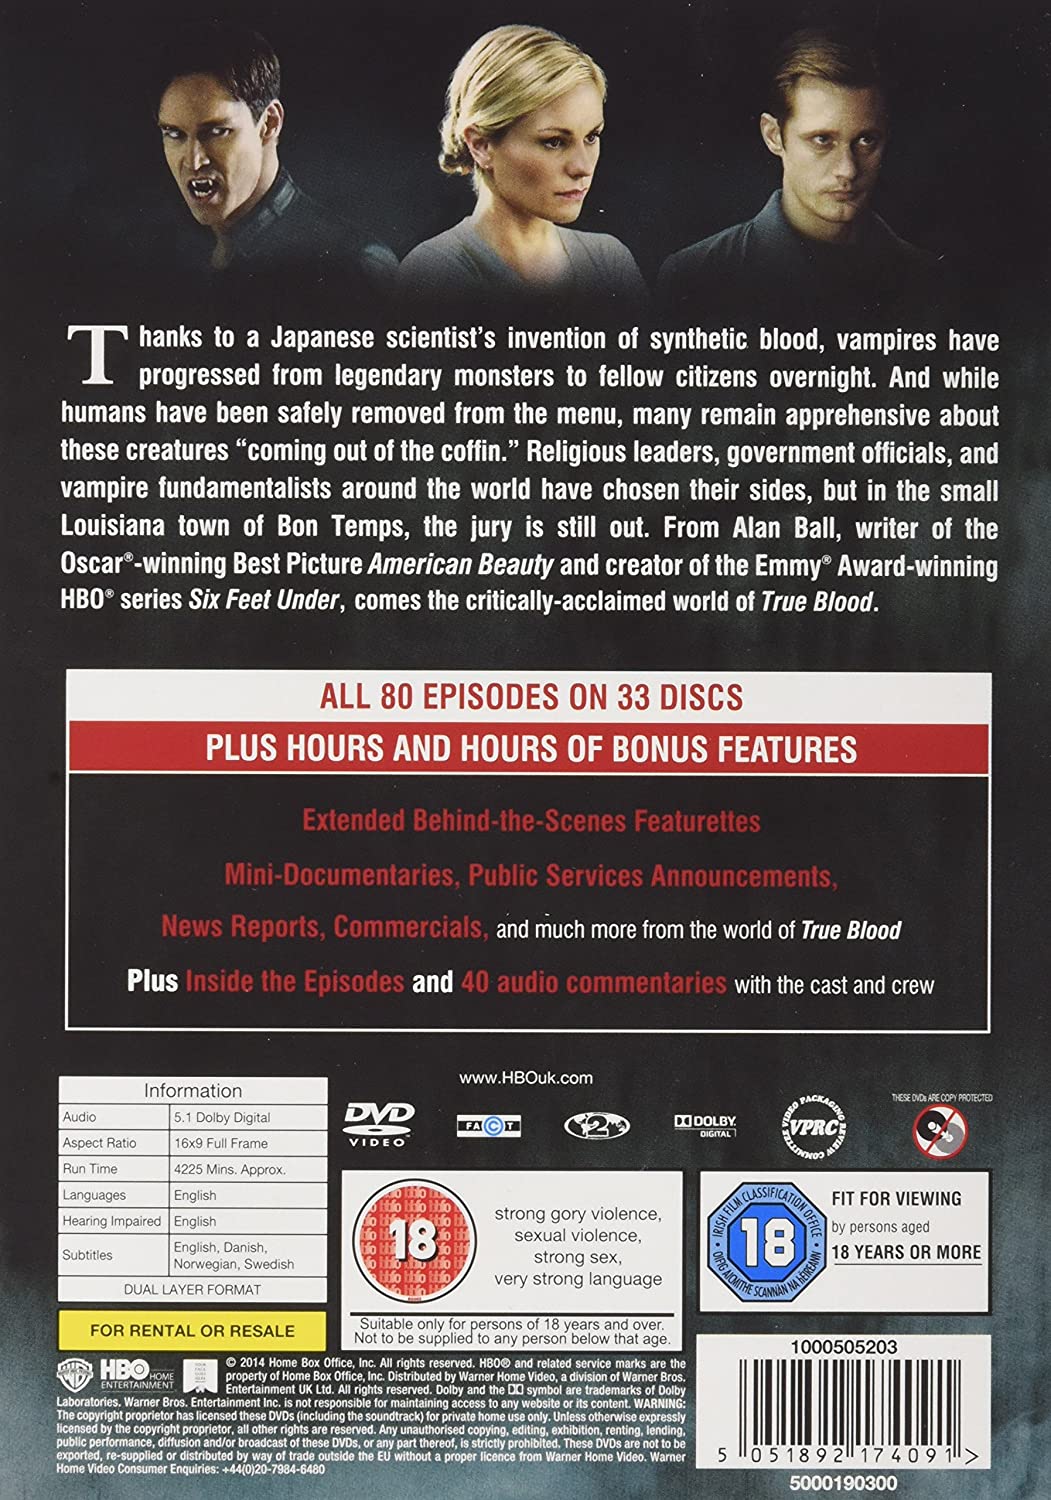 True Blood - Complete Season 1-7 - [DVD]